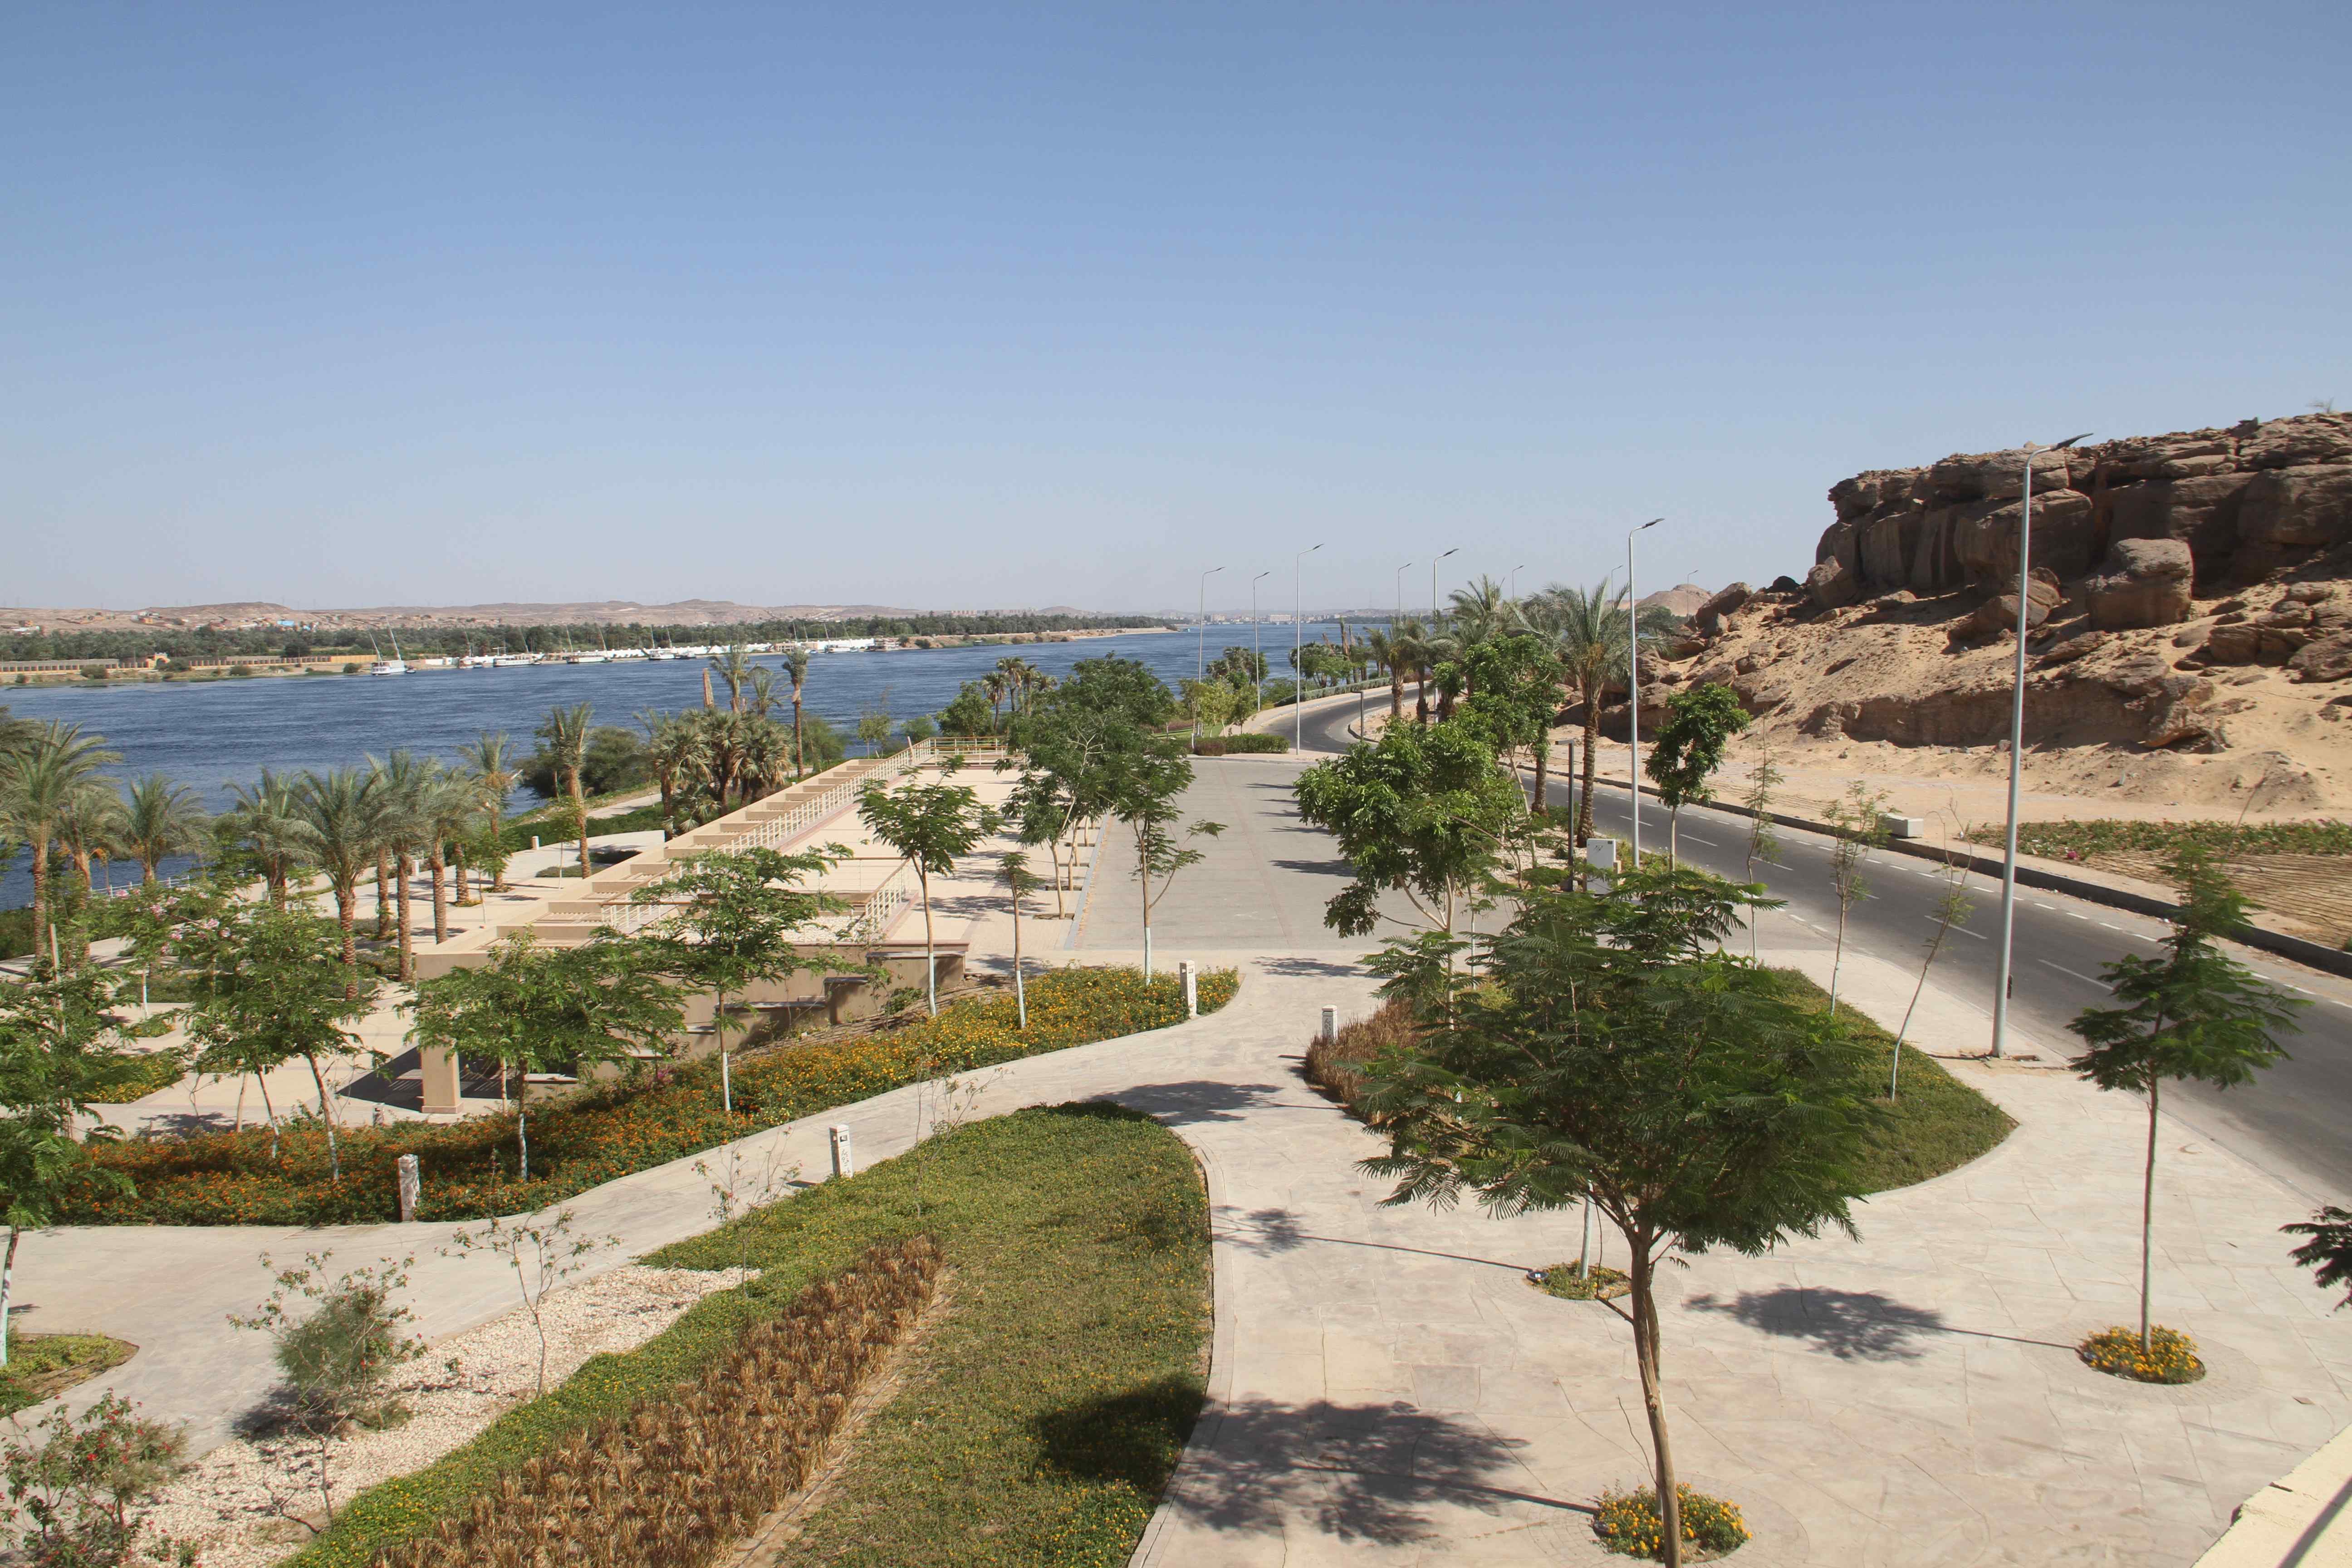 شروع ممشى أسوان الجديدة بانوراما سياحية فى صعيد مصر (6)